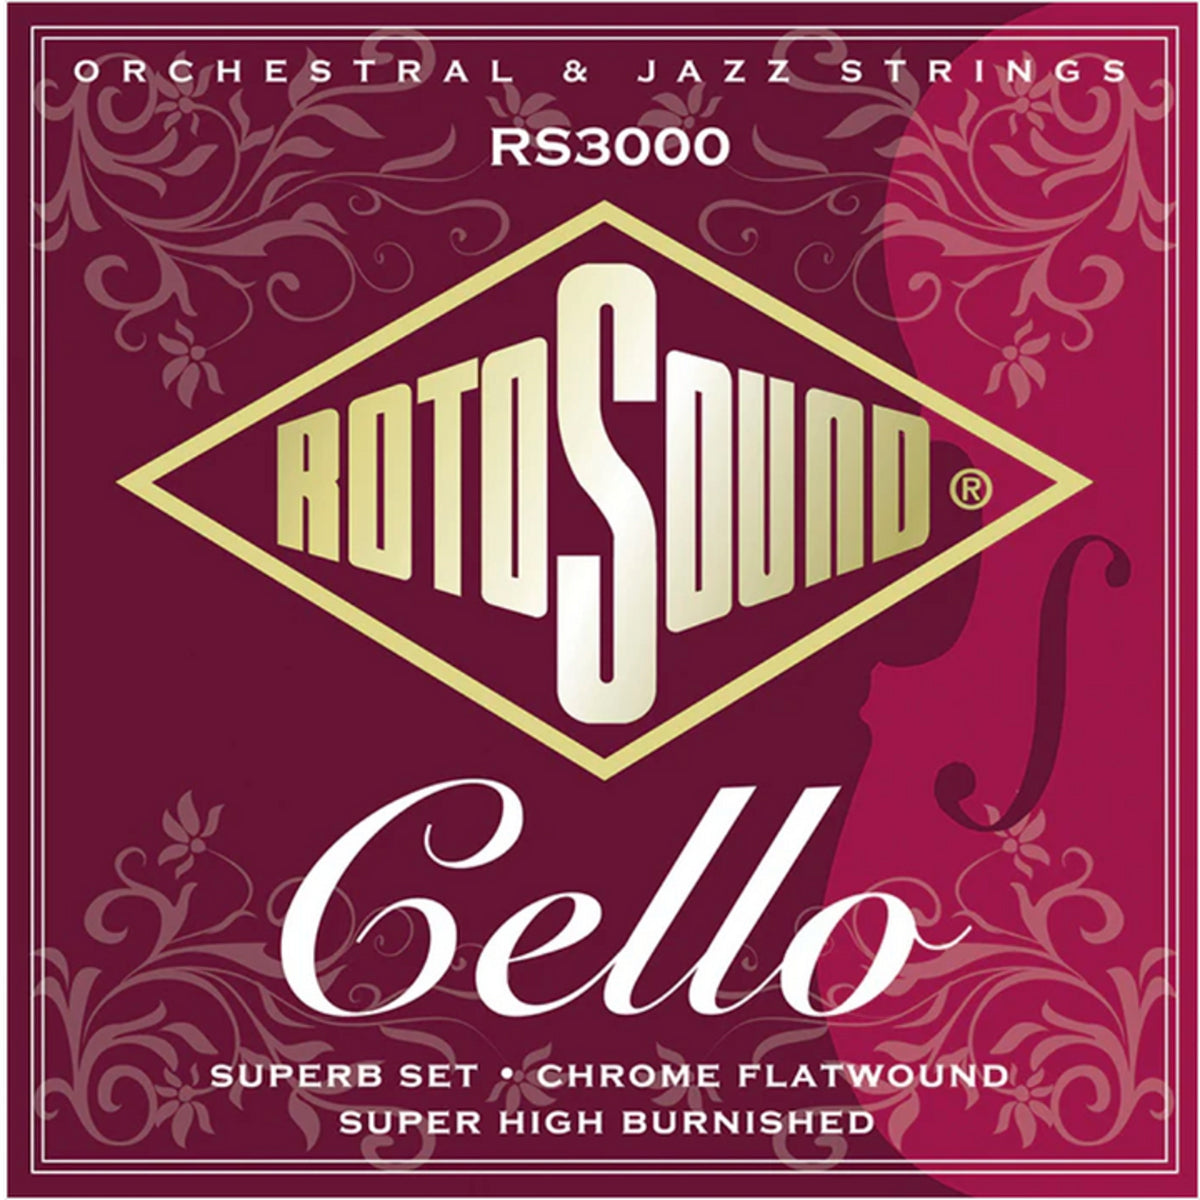 Rotosound Cello Superb String Set 4/4